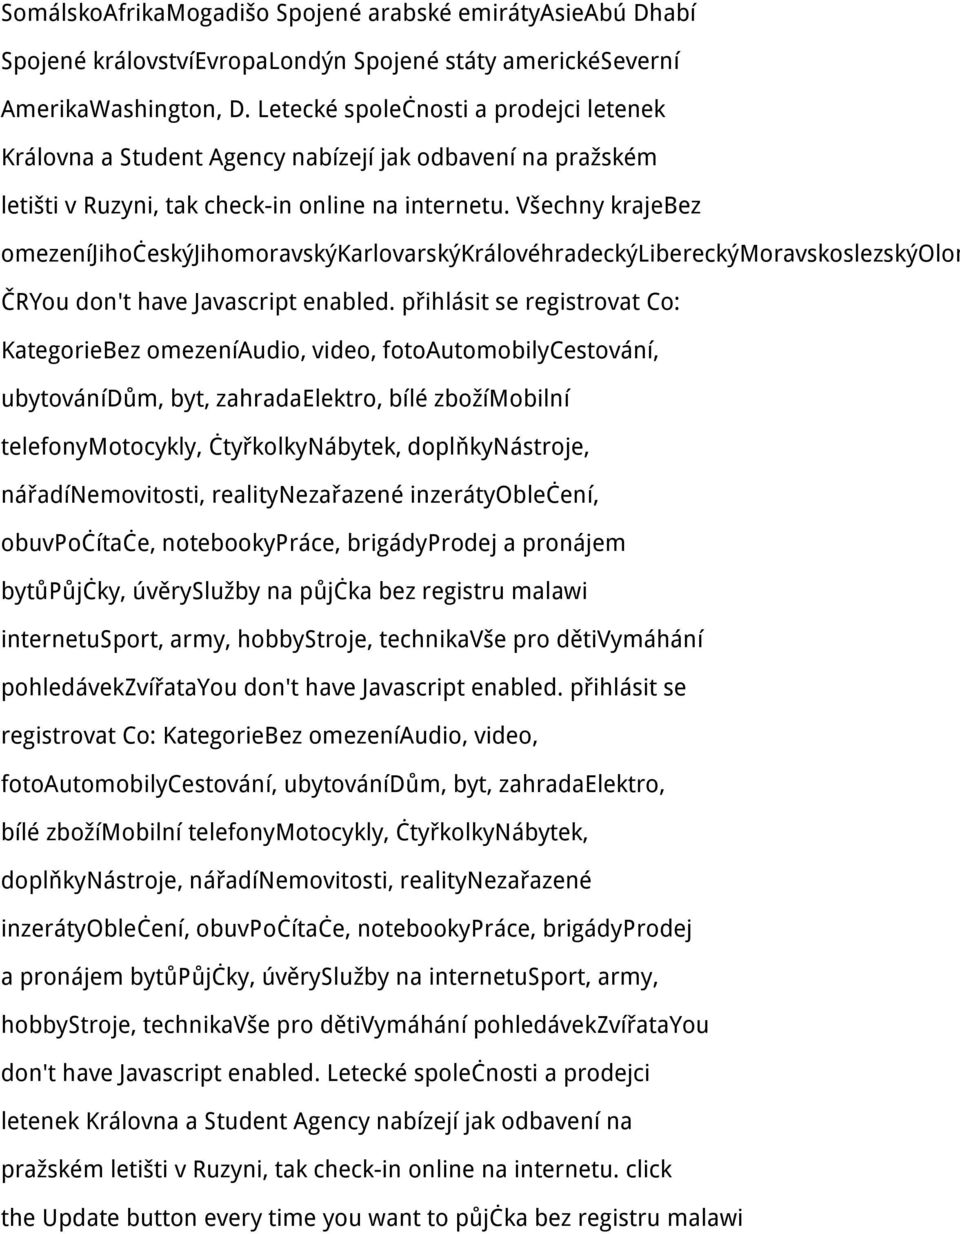 Všechny krajebez omezeníjihočeskýjihomoravskýkarlovarskýkrálovéhradeckýlibereckýmoravskoslezskýolom ČRYou don't have Javascript enabled.